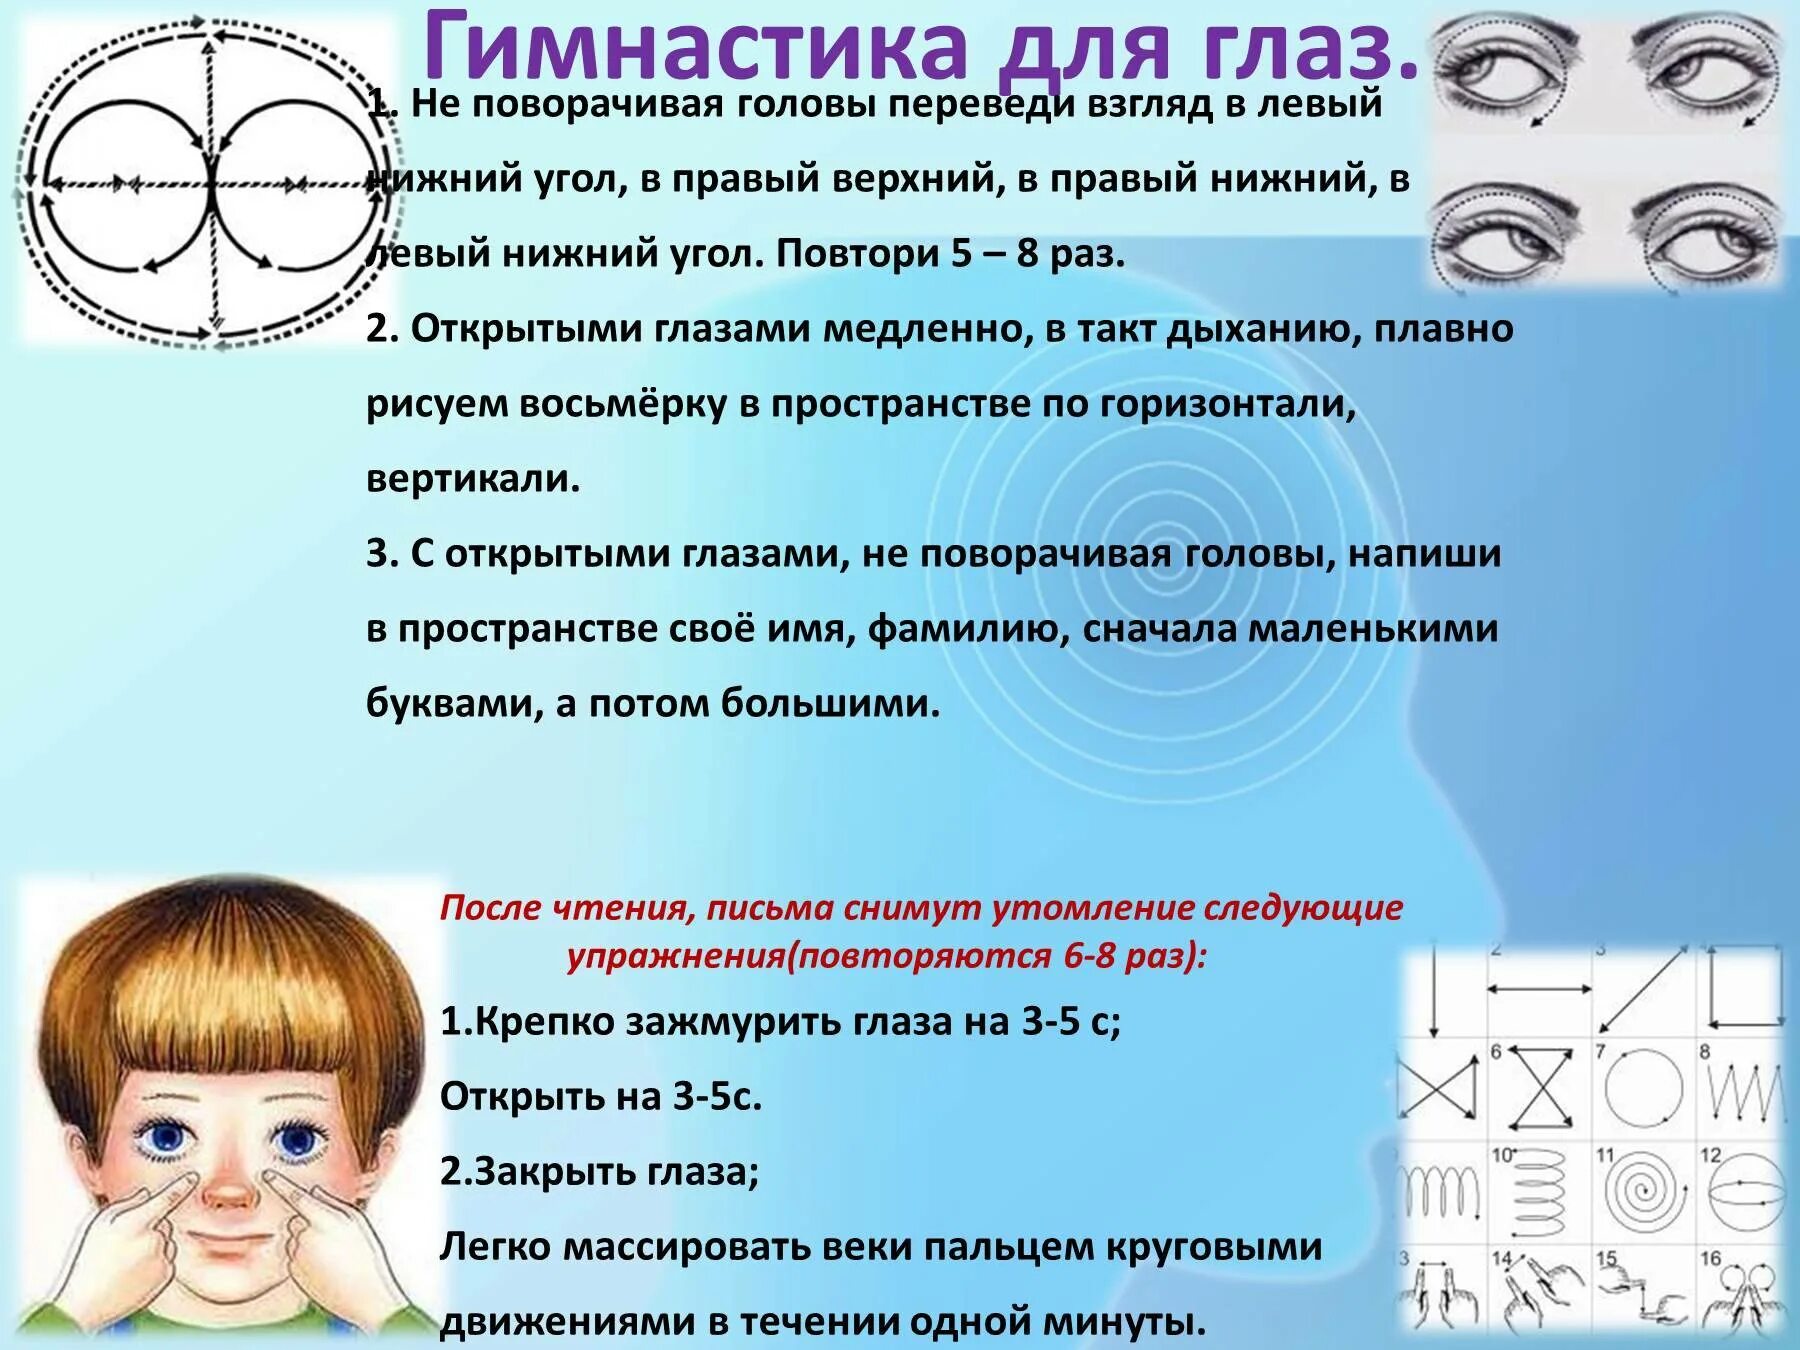 Упражнения для глаз для восстановления зрения близорукость у детей. Гимнастика для глаз близорукость у детей. Гимнастика глаз при астигматизме у детей для улучшения зрения. Гимнастика для глаз при близорукости для детей 9 лет. Какая профилактика для зрения